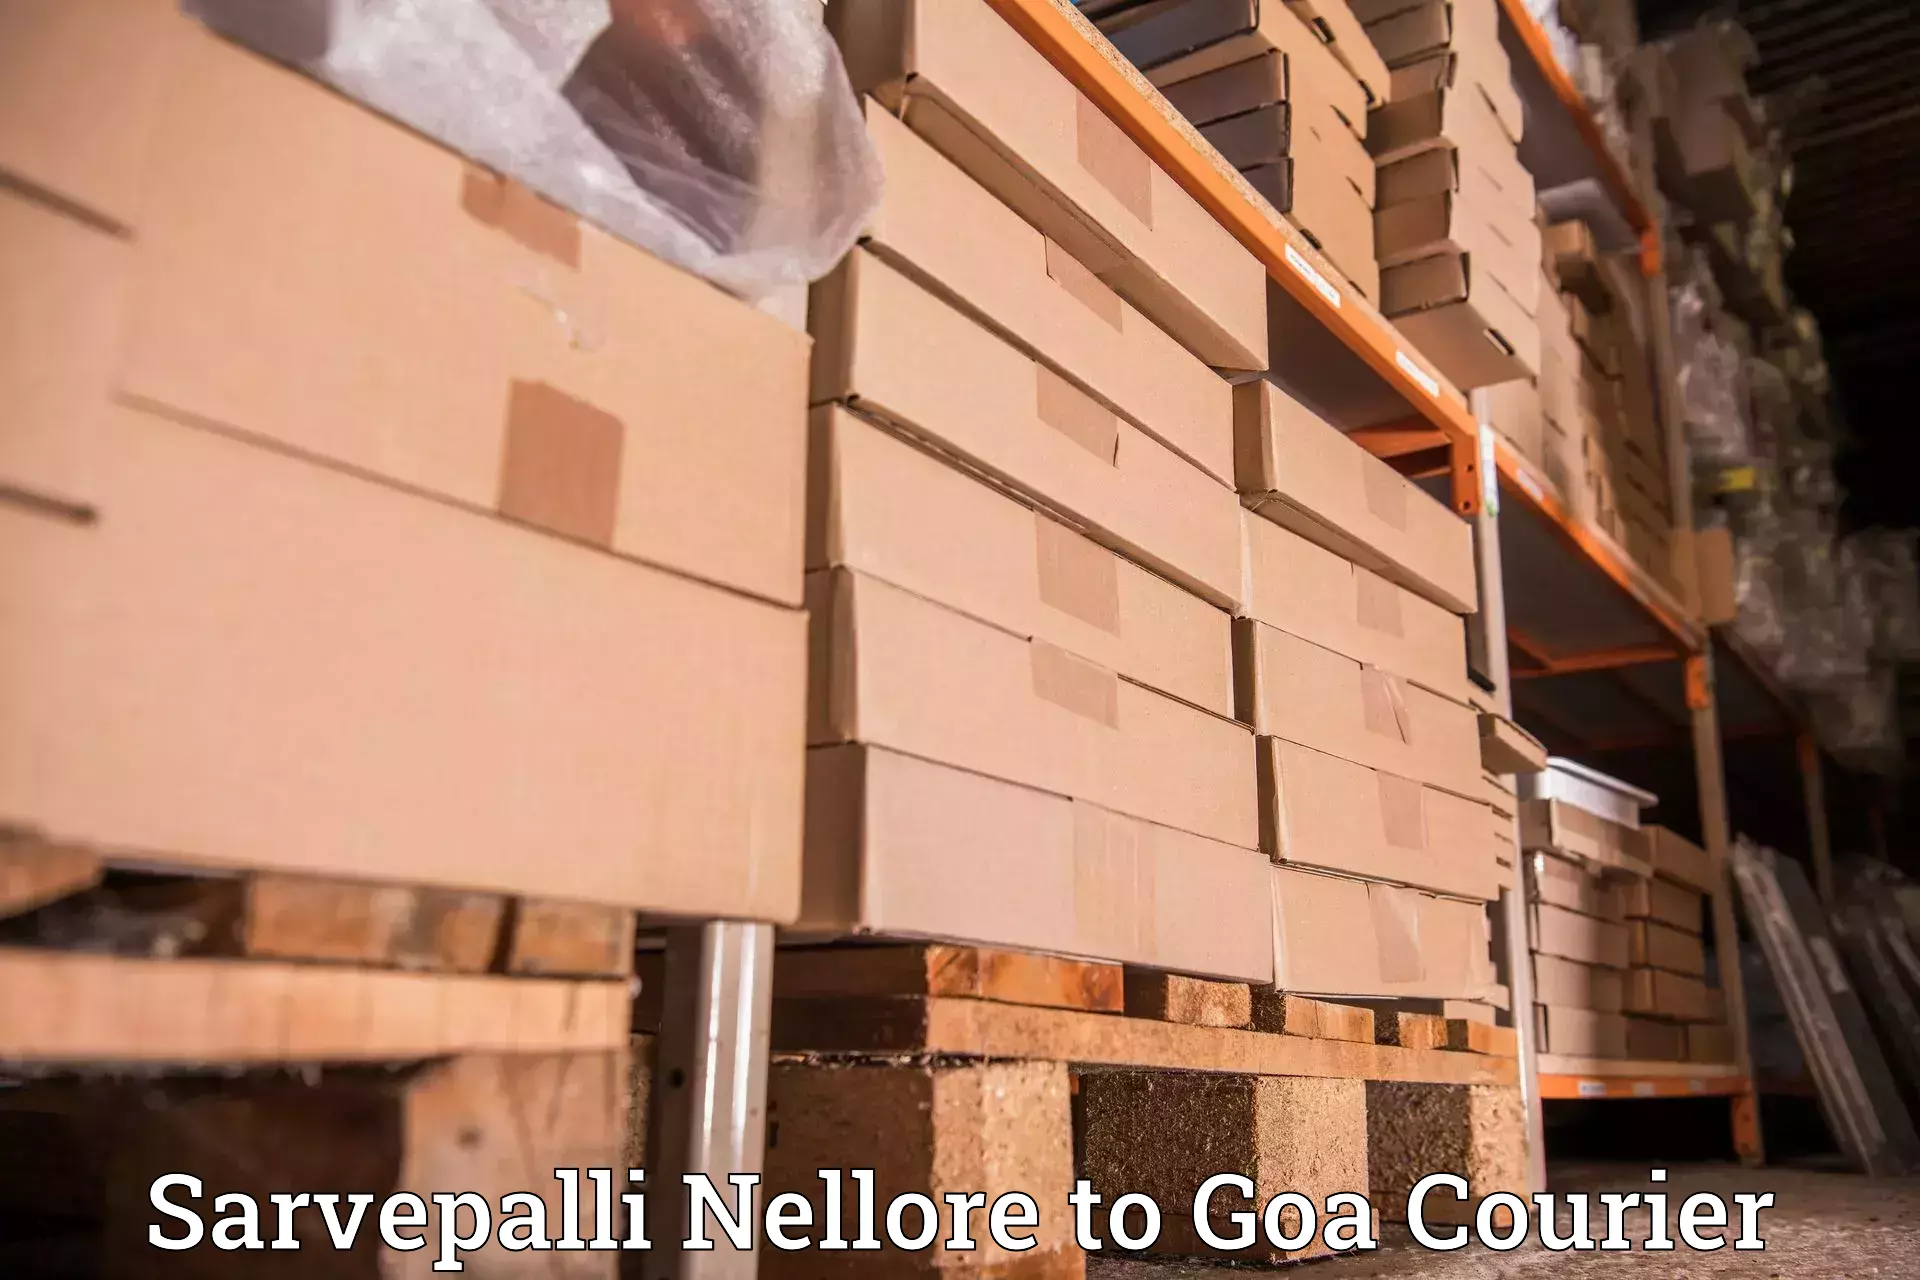 Flexible courier rates Sarvepalli Nellore to South Goa